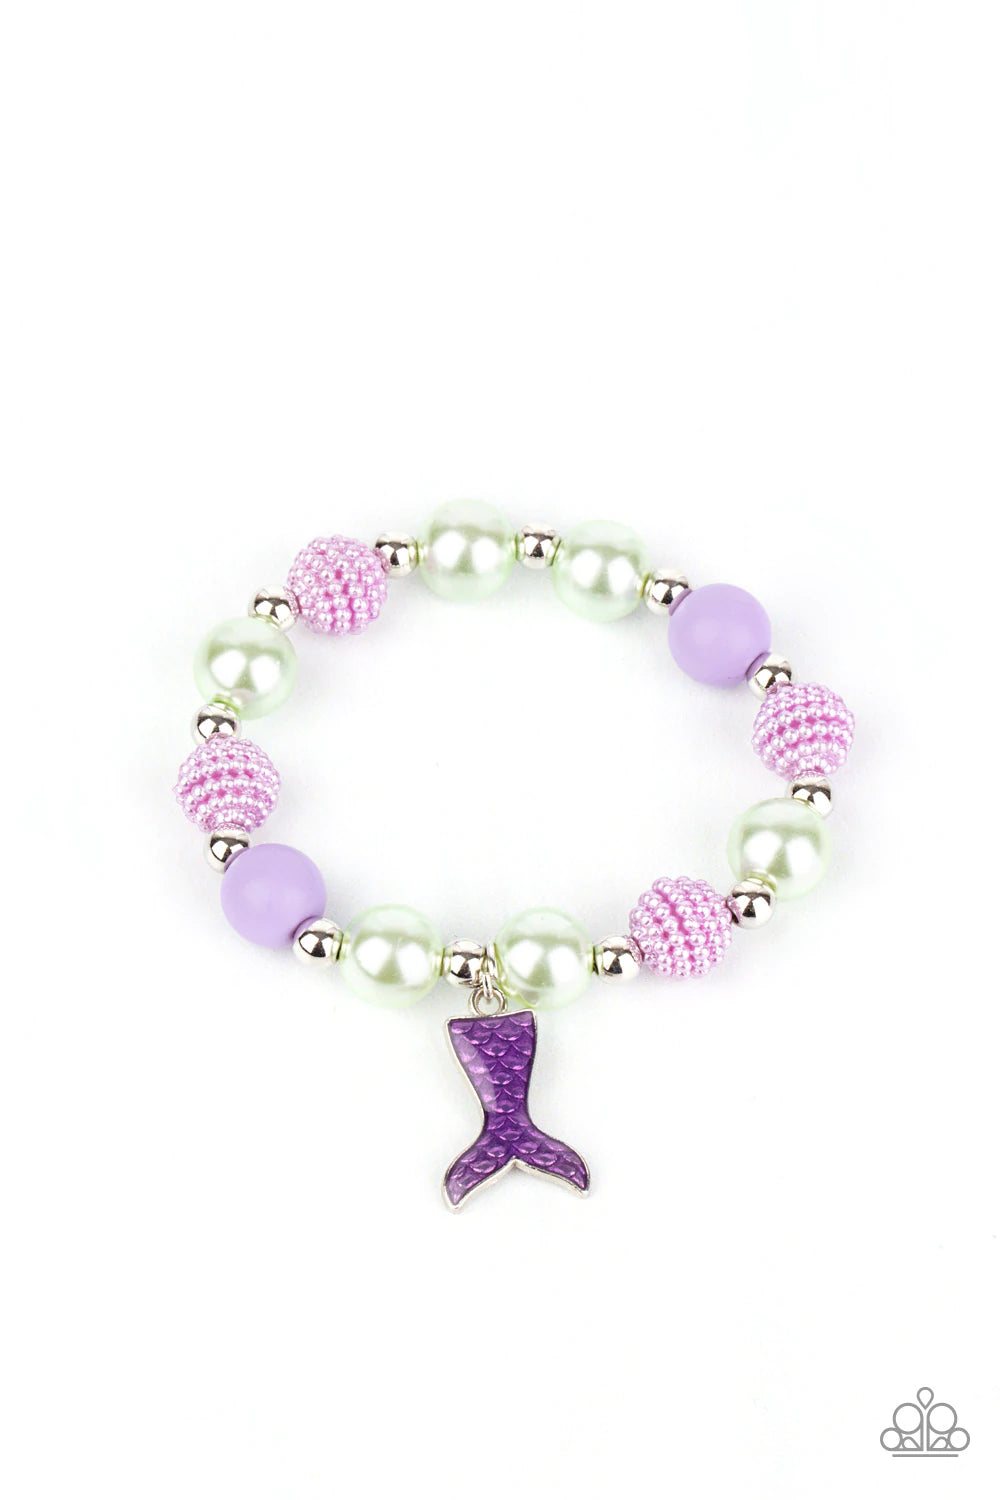 Starlet Shimmer Mermaid Tail Bracelets ♥ Starlet Shimmer Bracelets